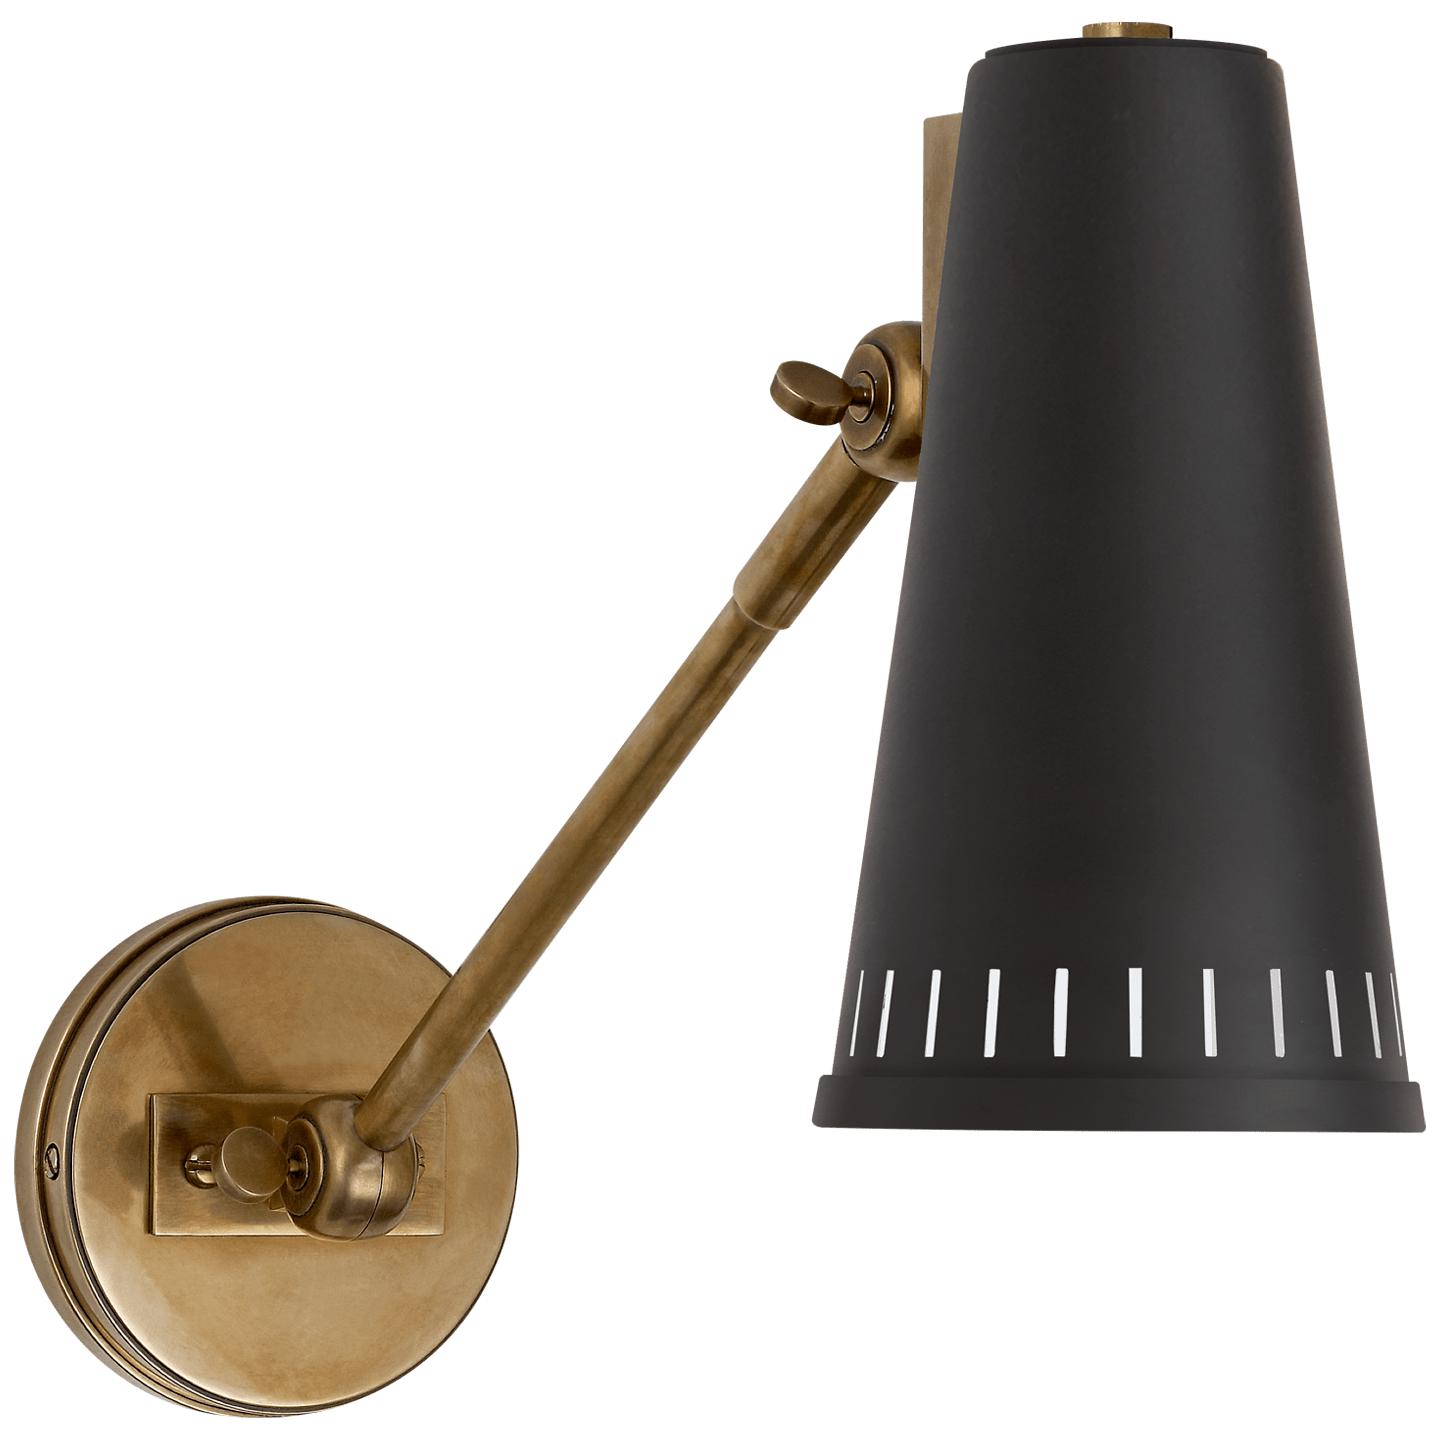 Купить Бра Antonio Adjustable One Arm Wall Lamp в интернет-магазине roooms.ru